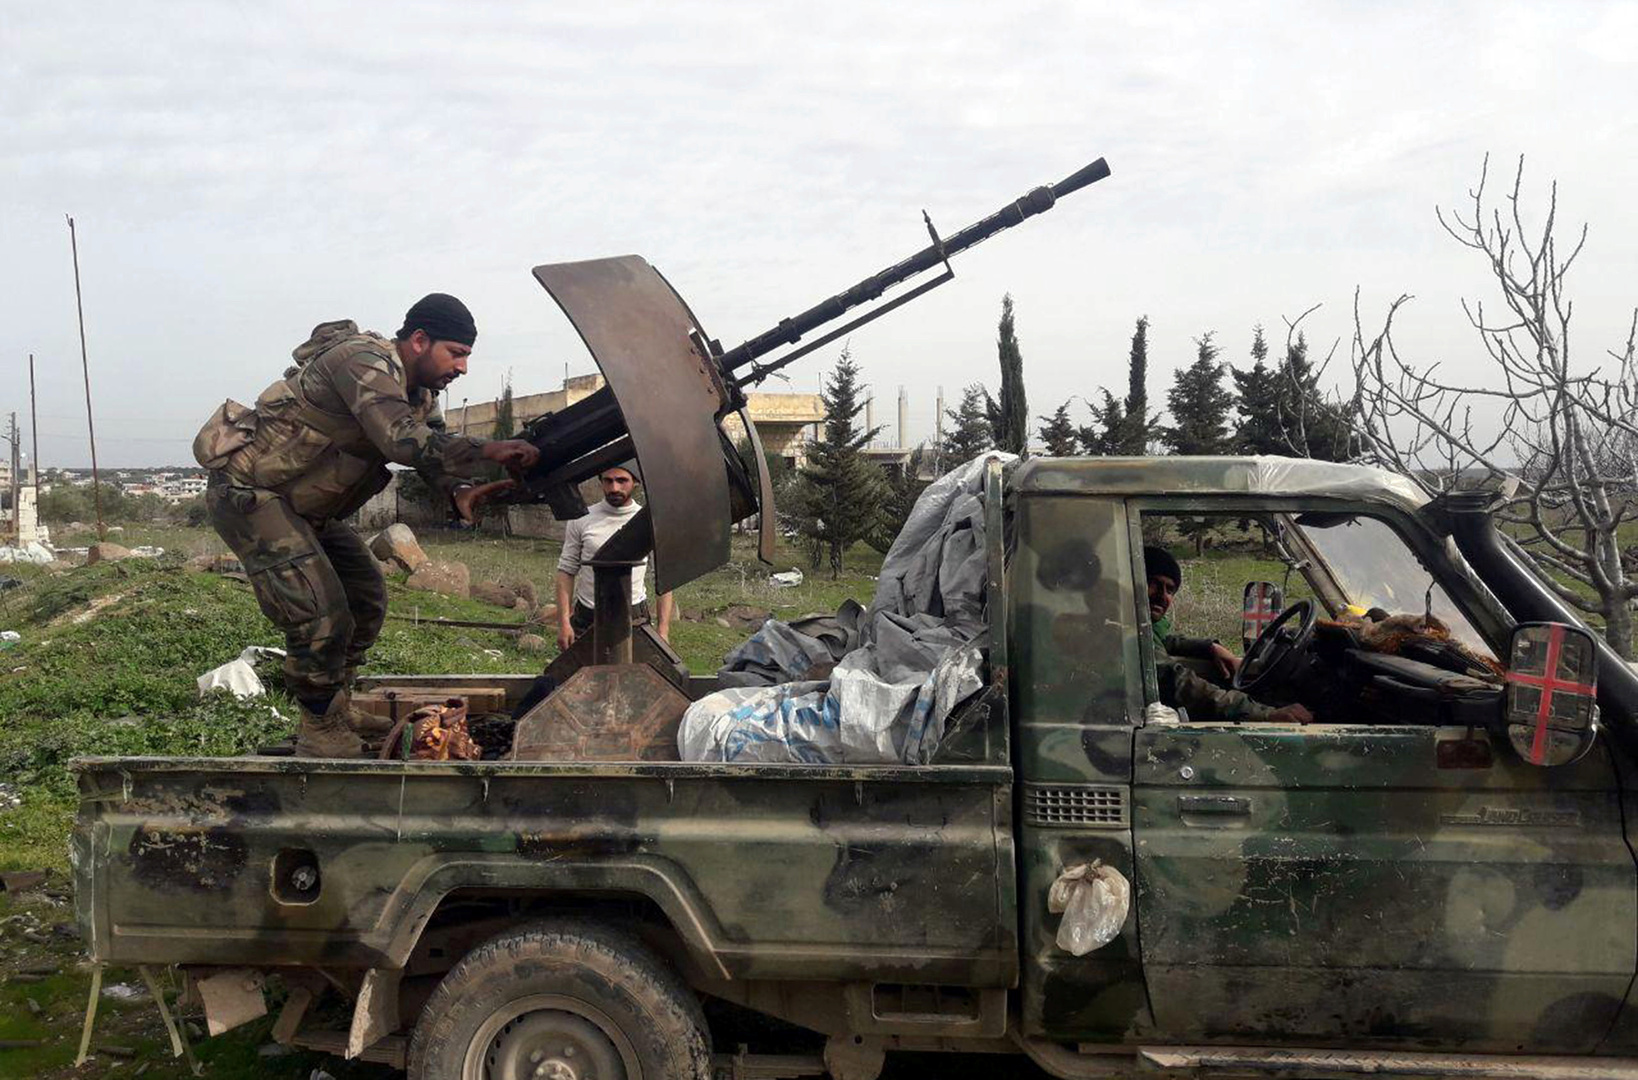 مركز المصالحة الروسي: إصابة 3 جنود سوريين في إطلاق نار من قبل مسلحين